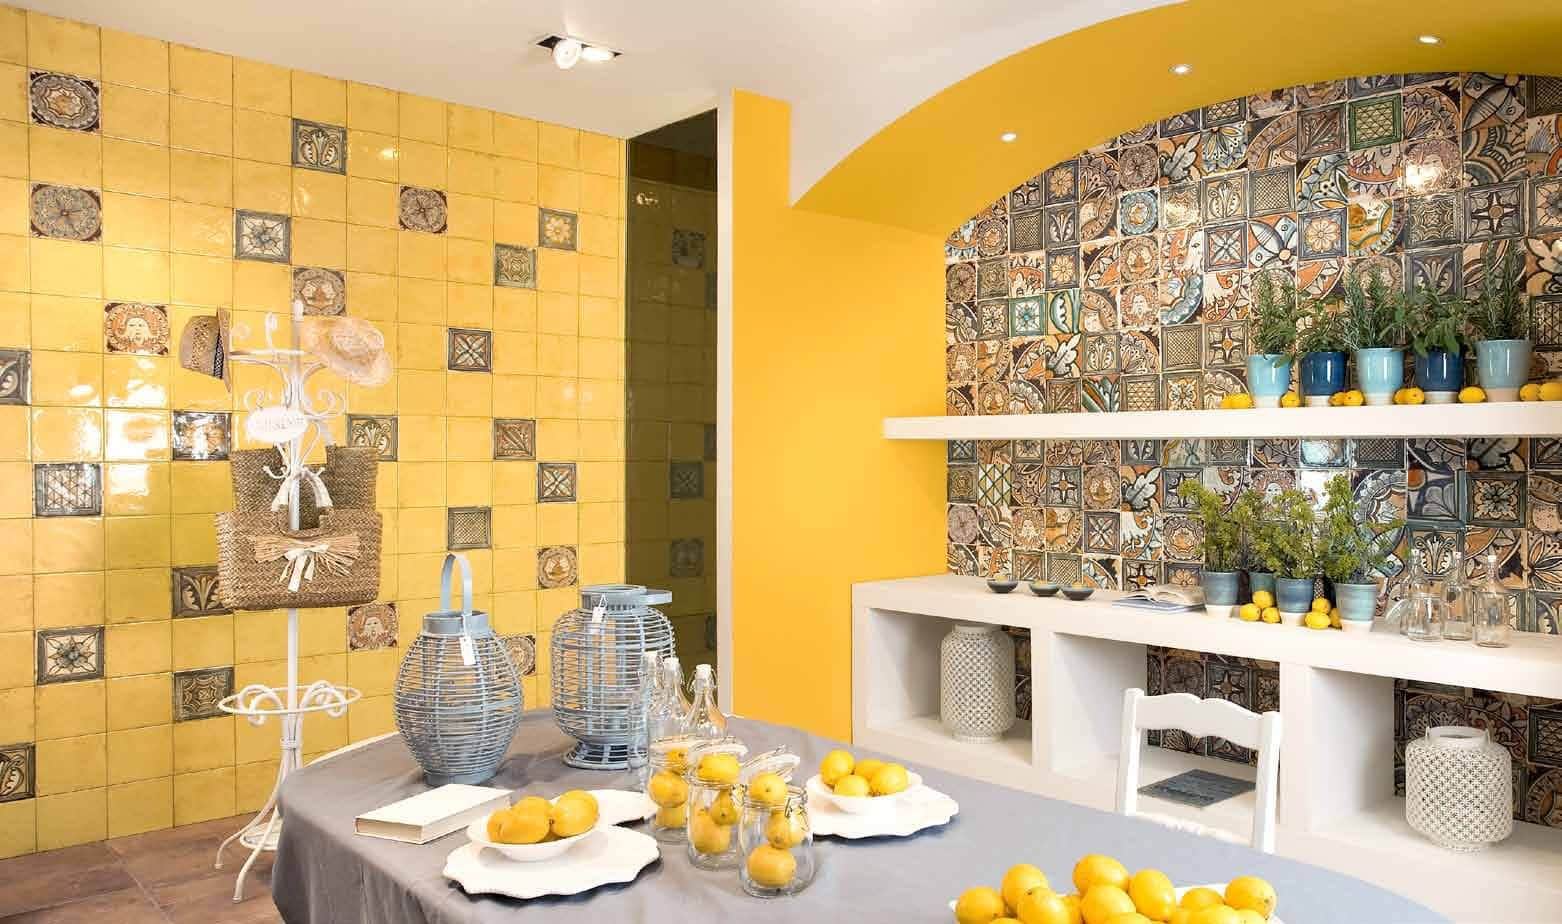 Lemon yellow wall tile for colorful, unique kitchen